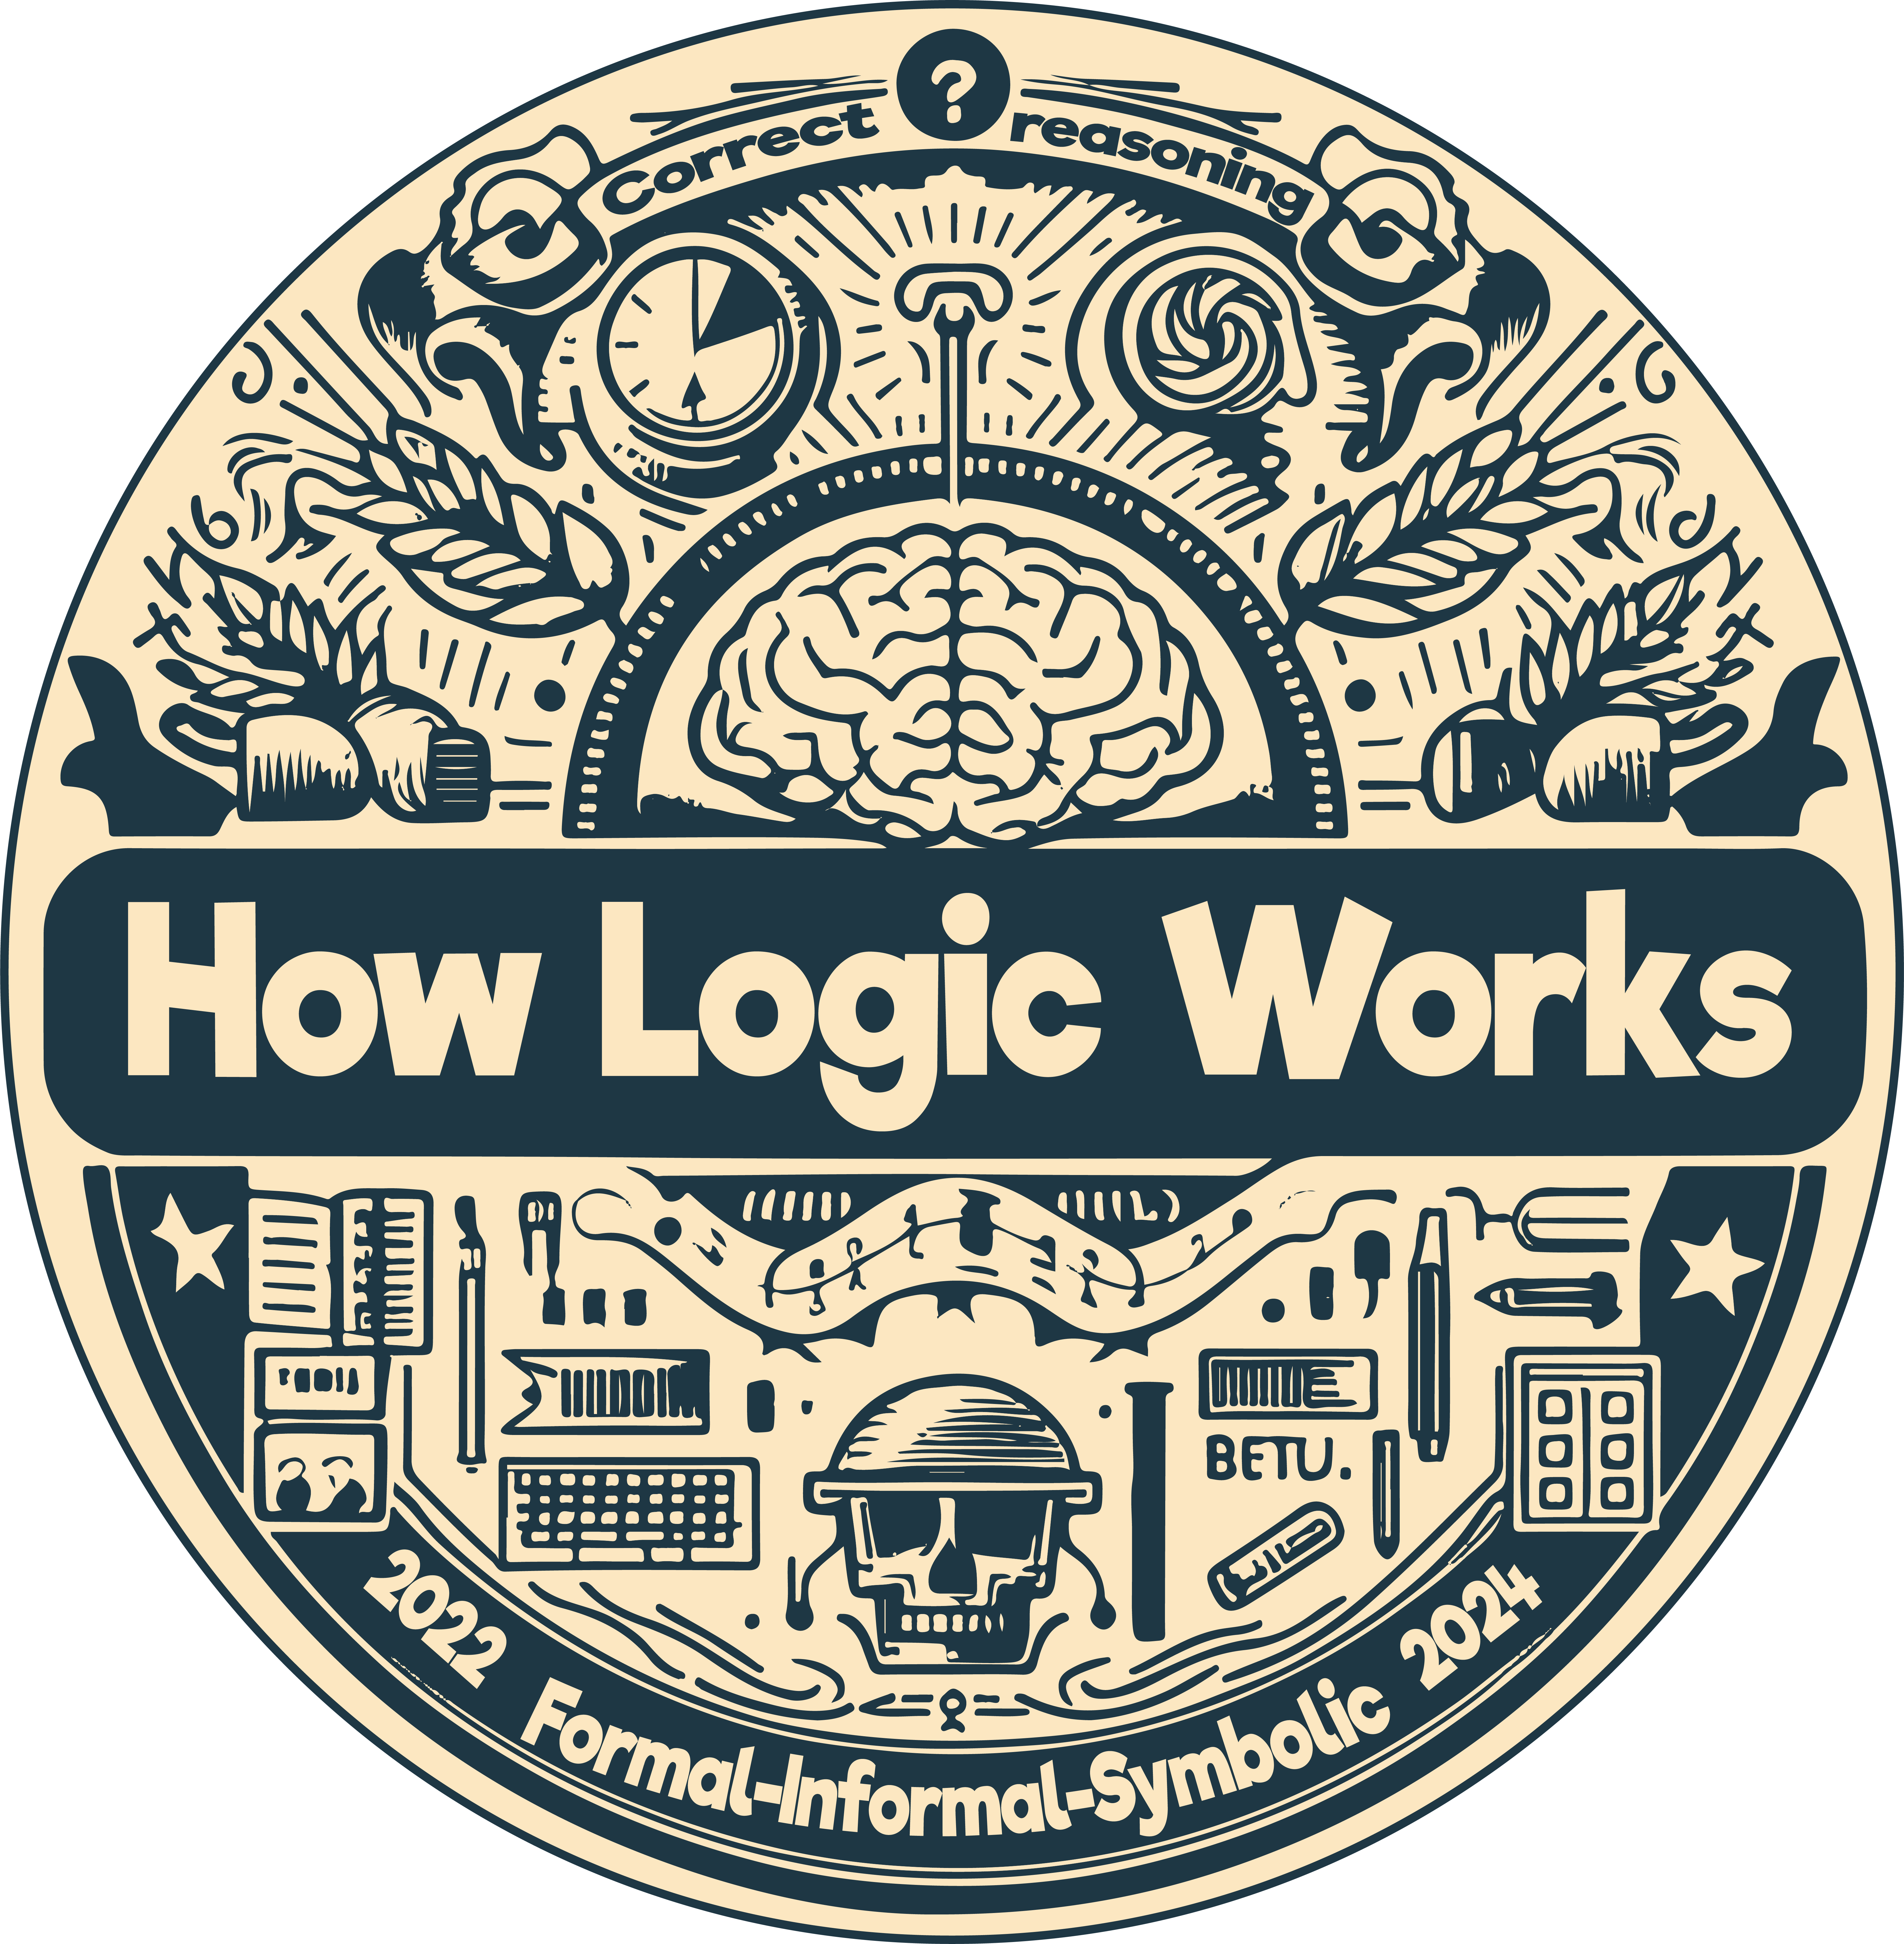 LogicLogo for howlogicworks.com